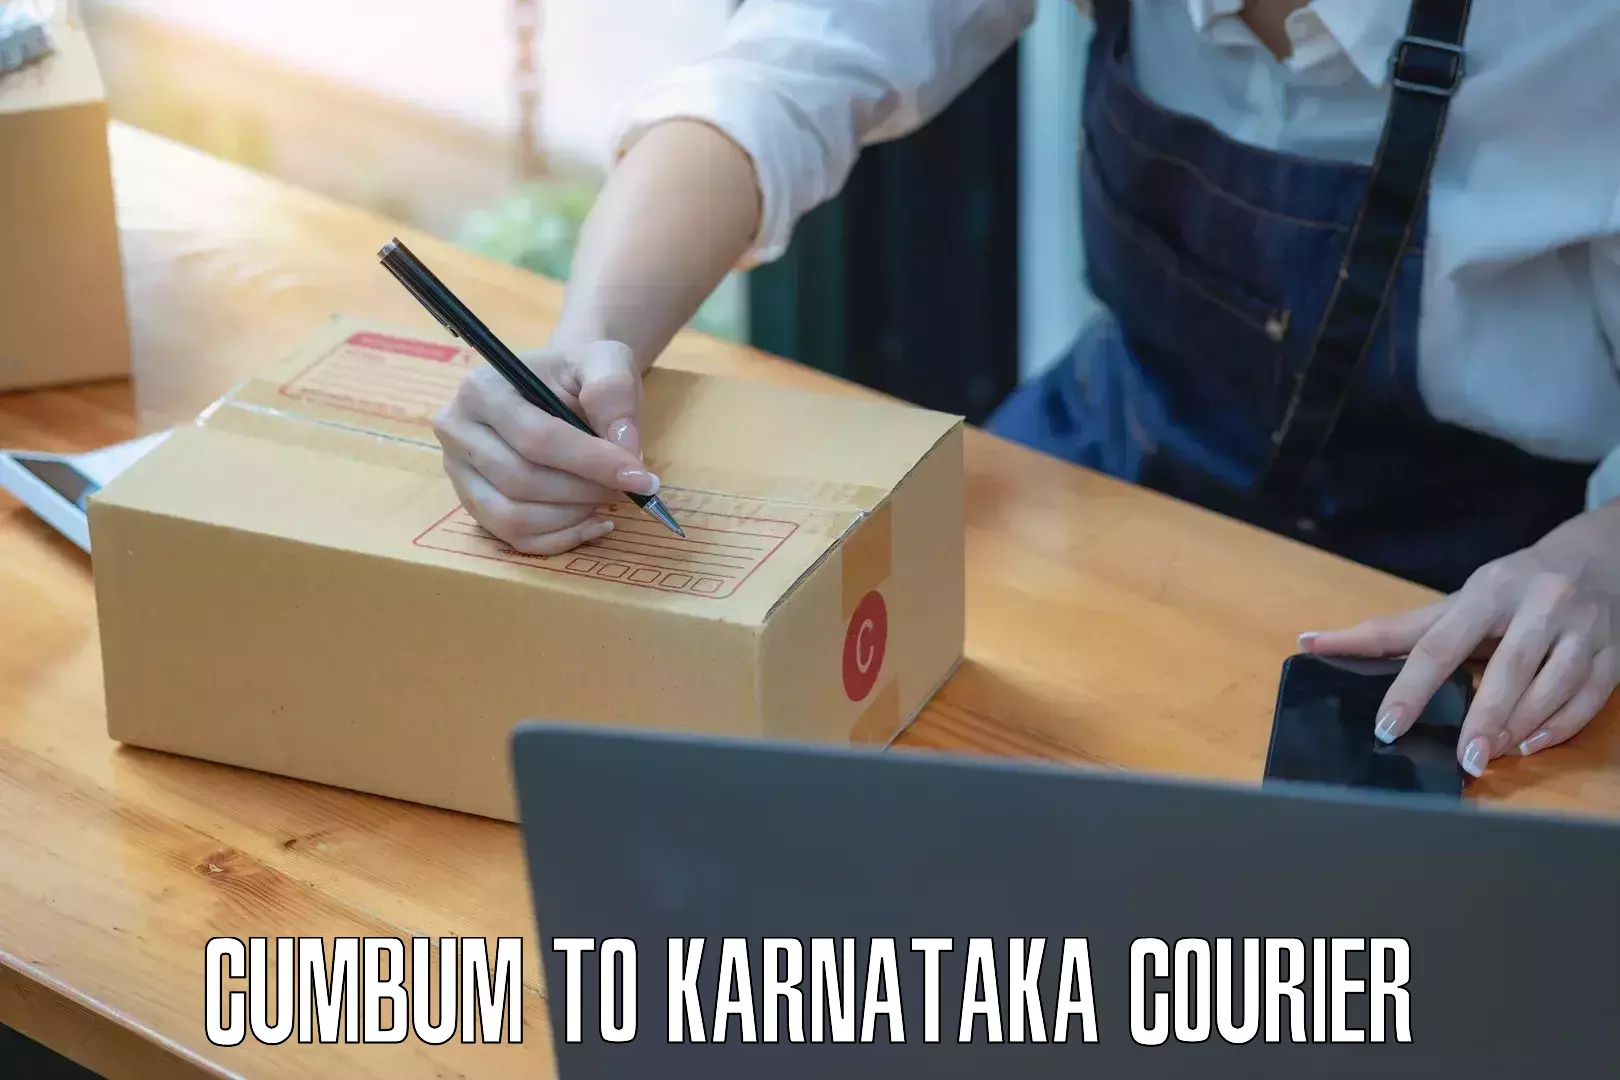 Professional courier handling Cumbum to Kushtagi